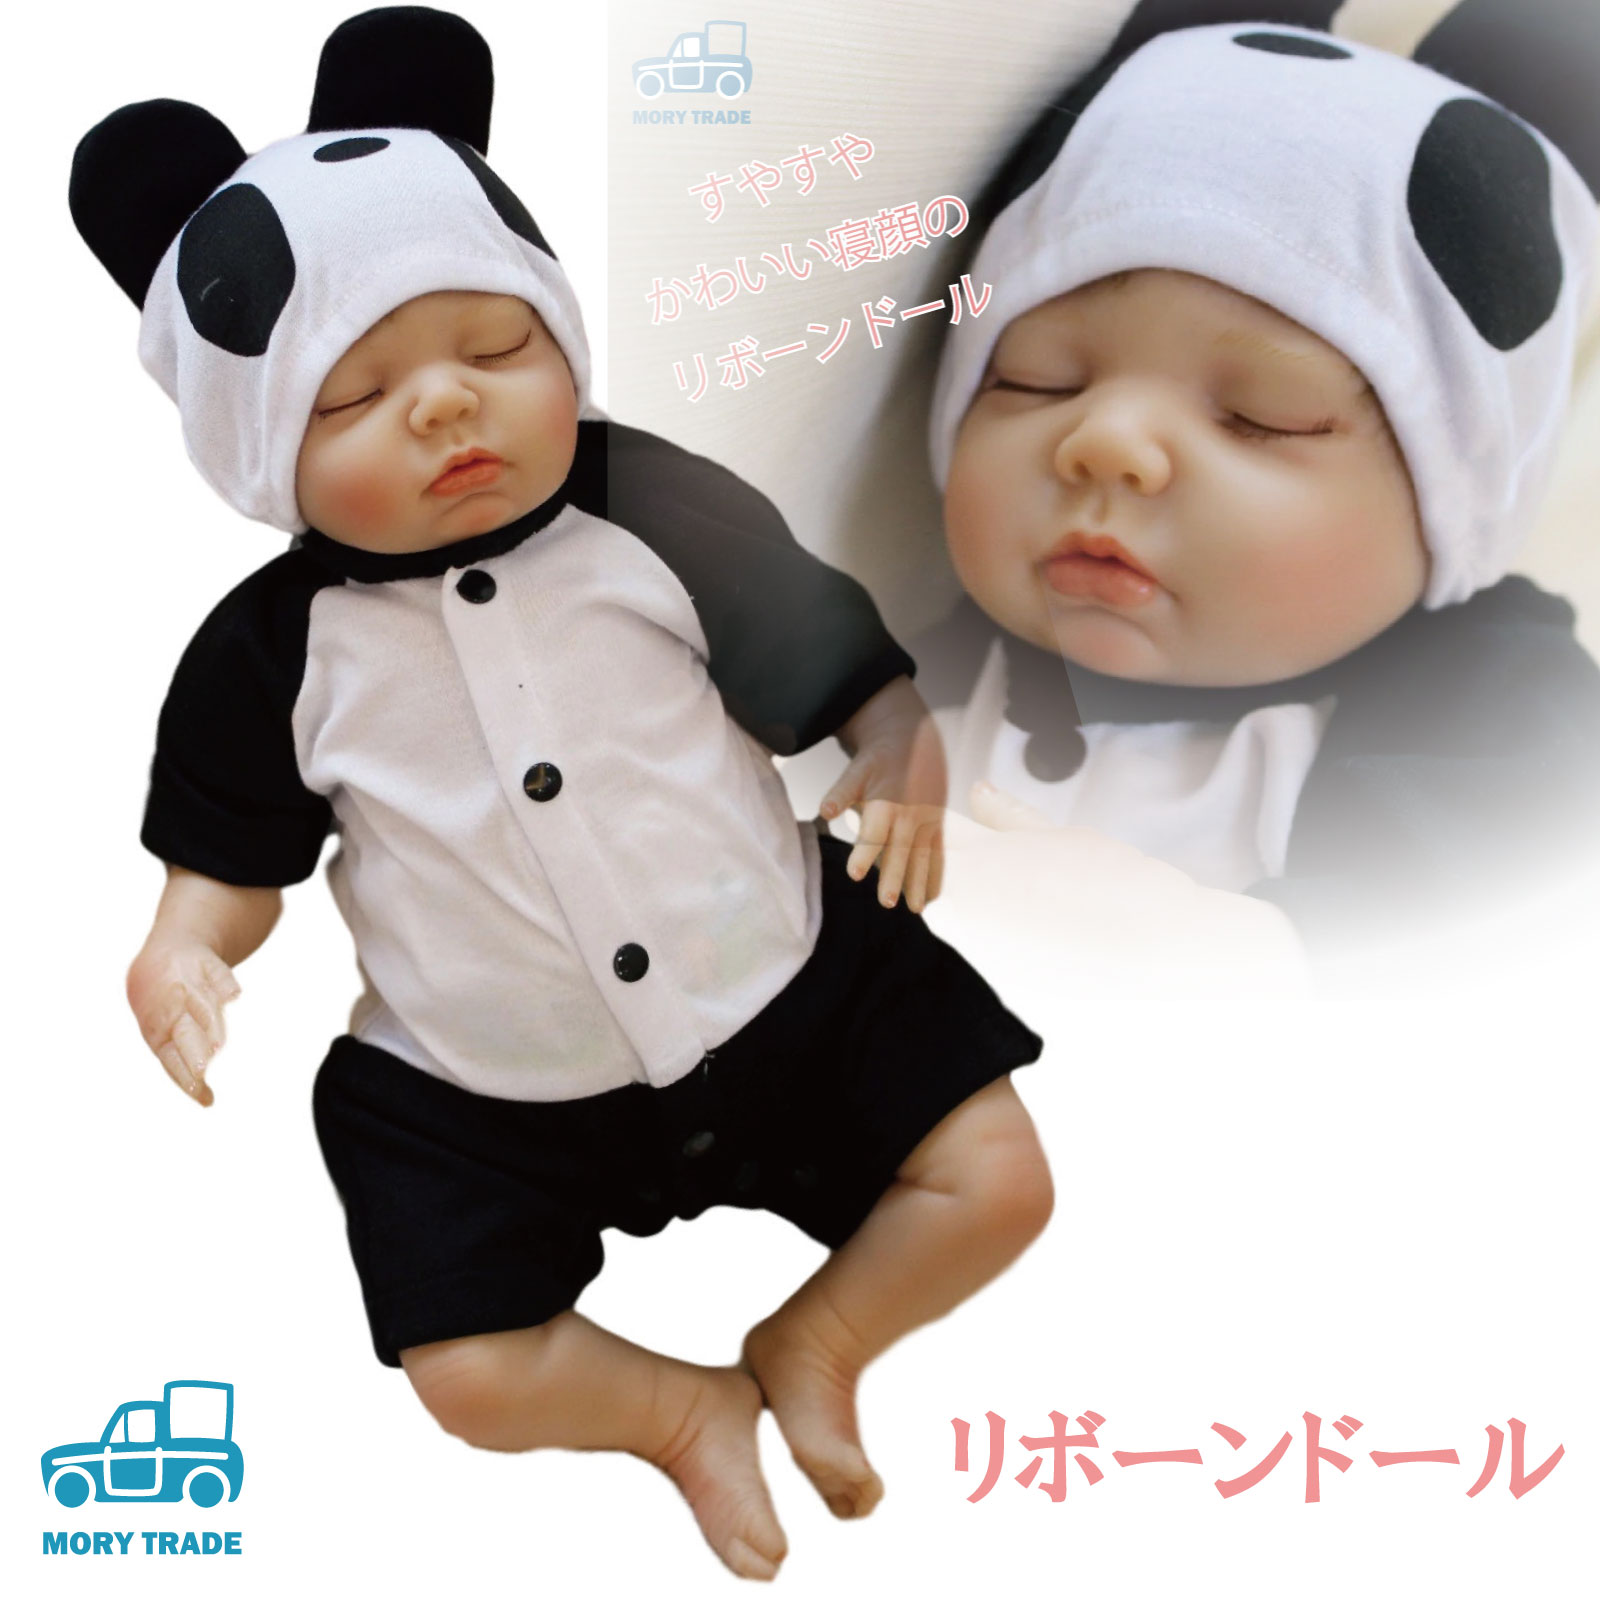 日本人の赤ちゃん リボーンドール 日本人顔でとても可愛いです ...